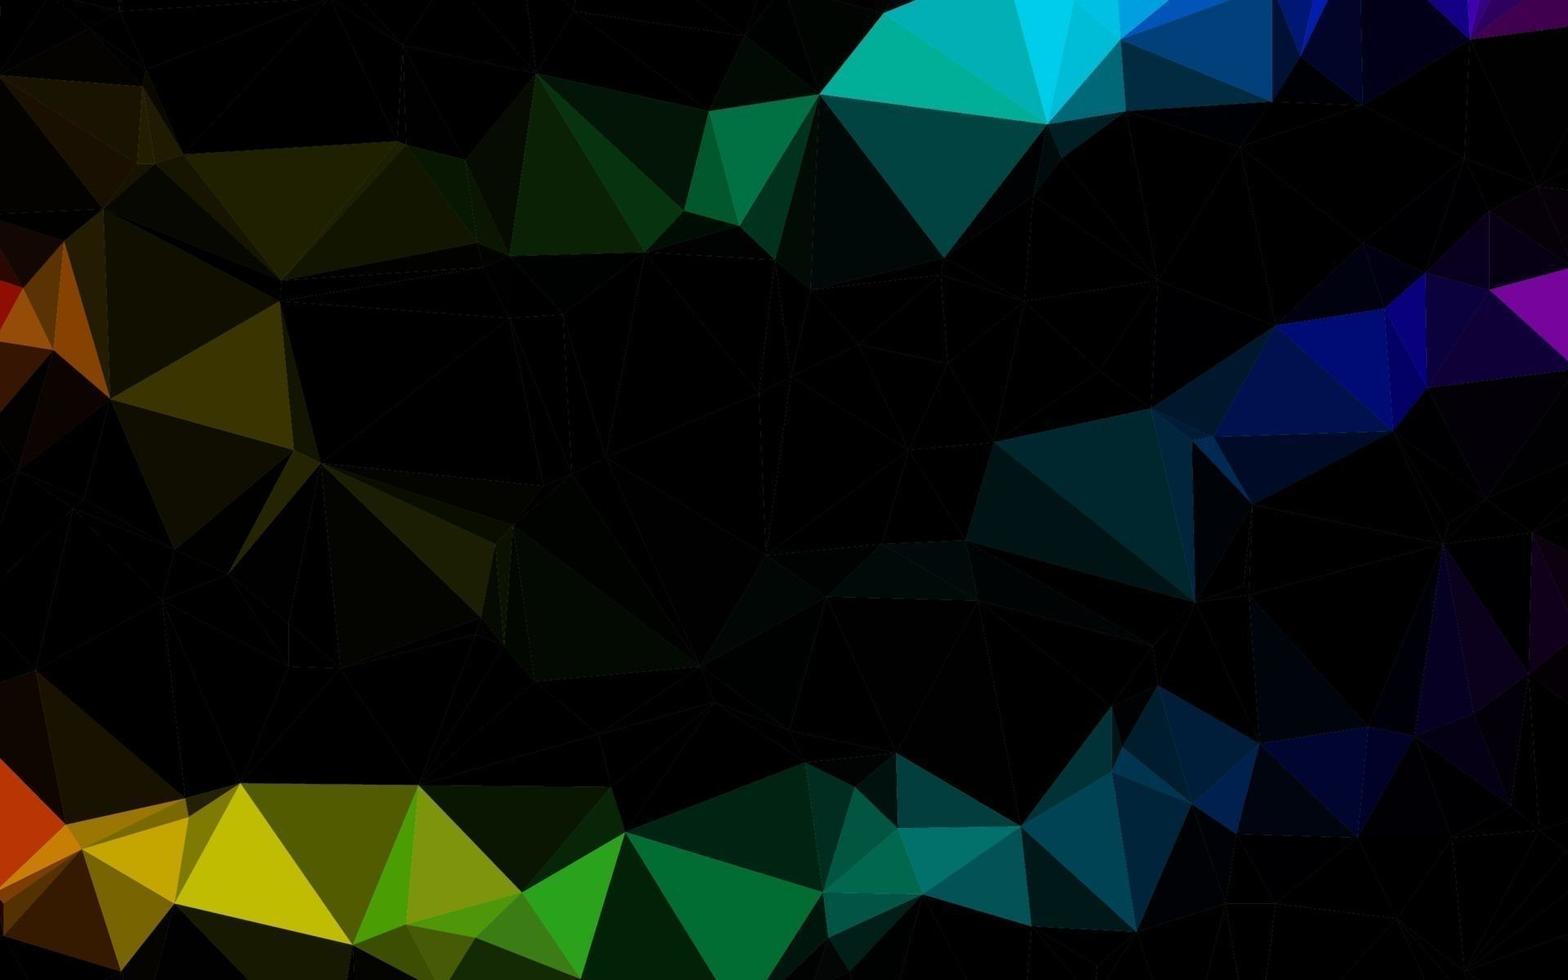 lumière multicolore, disposition polygonale abstraite de vecteur arc-en-ciel.